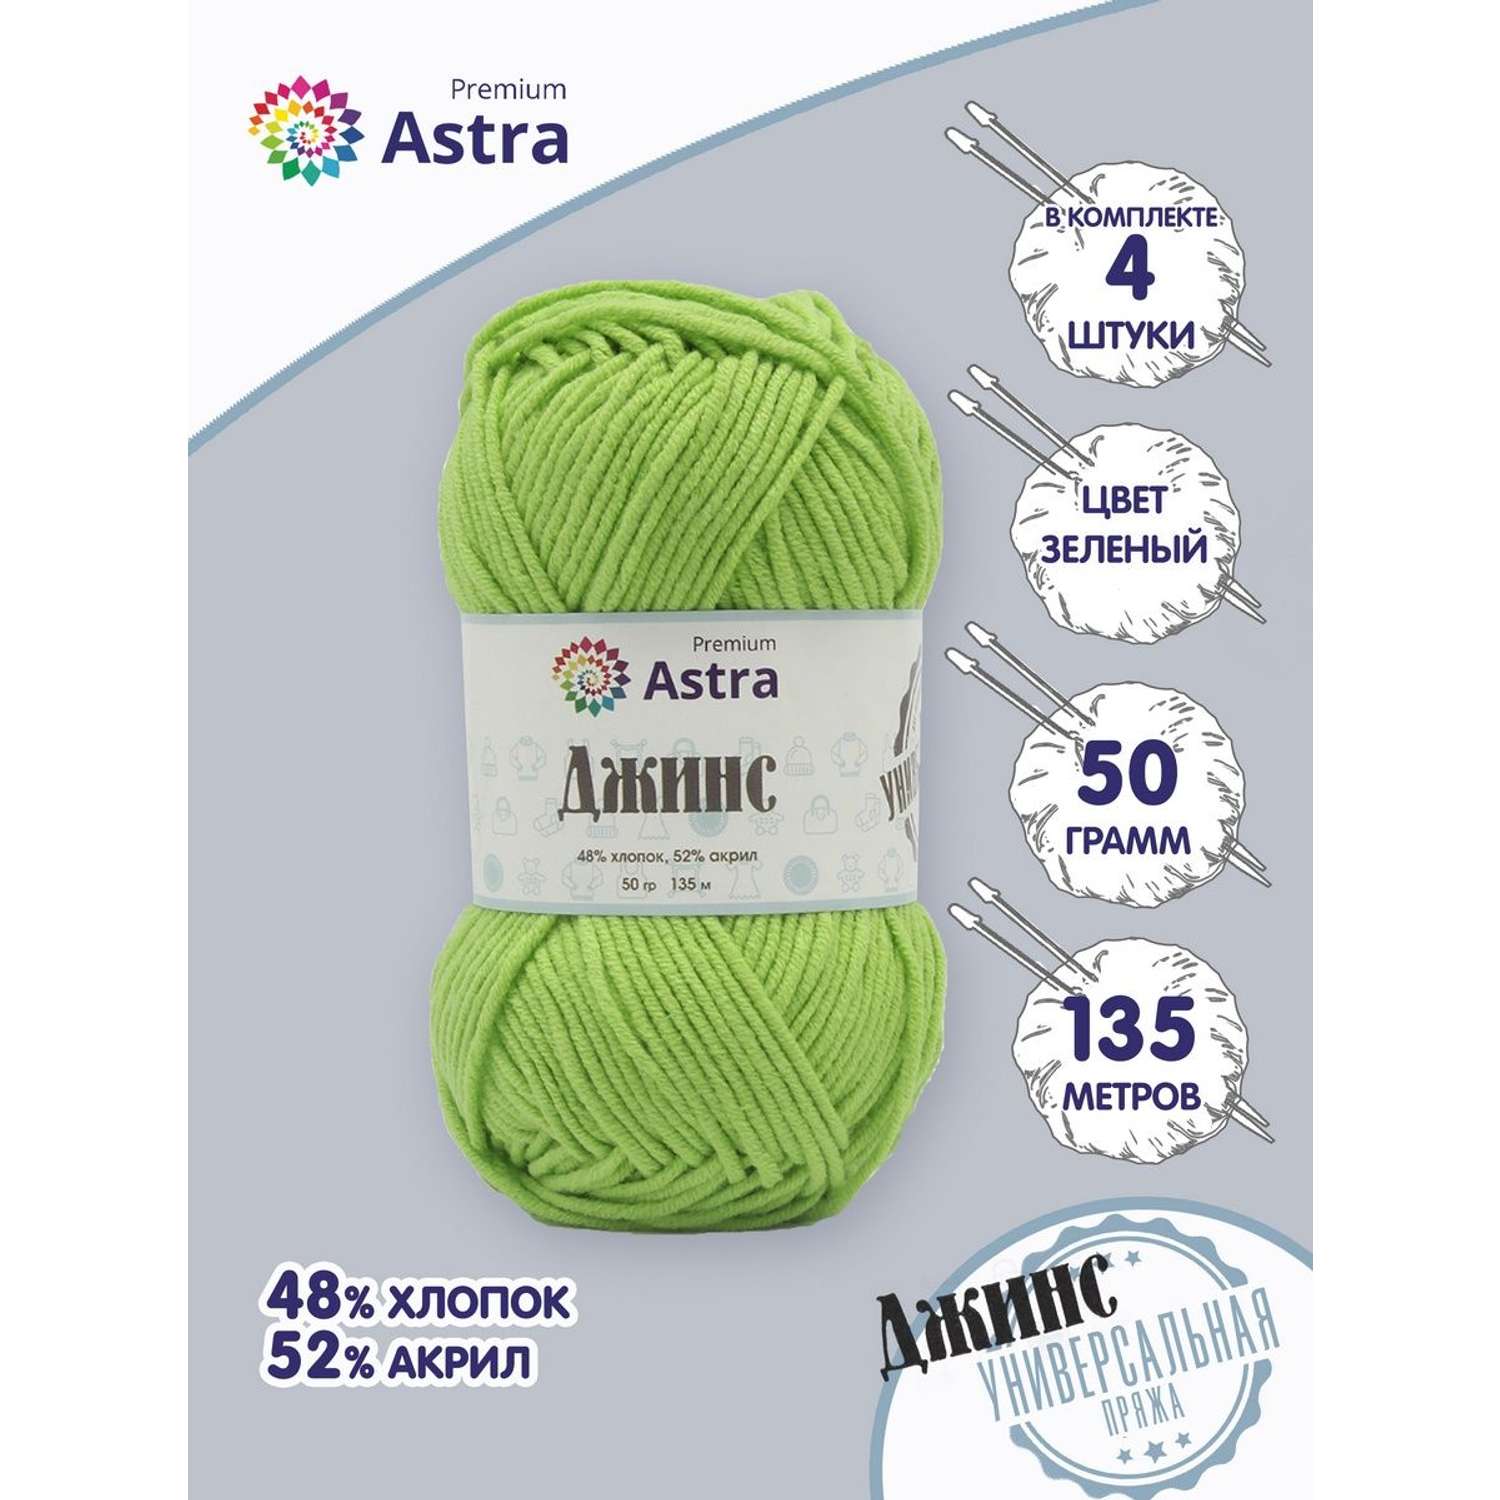 Пряжа для вязания Astra Premium джинс для повседневной одежды акрил хлопок 50 гр 135 м 450 зеленый 4 мотка - фото 1